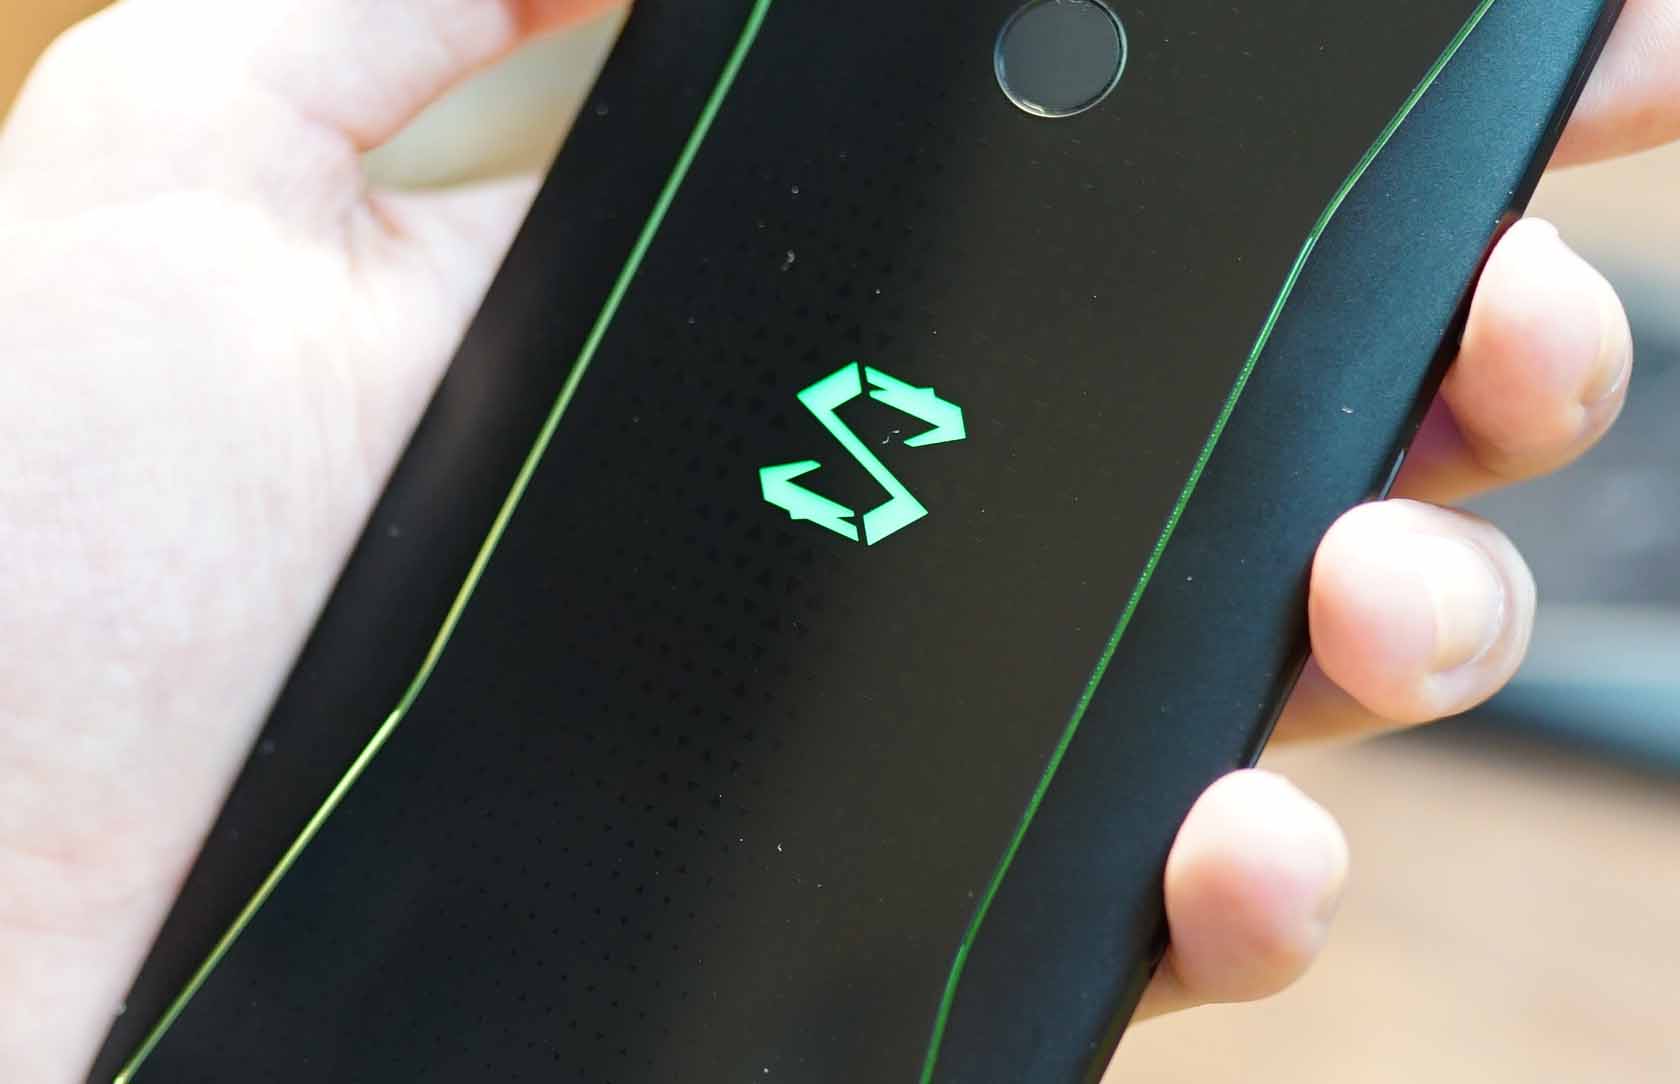 Xiaomi Black Shark 2 : une première photo dévoile le dos légèrement modifié du smartphone gaming